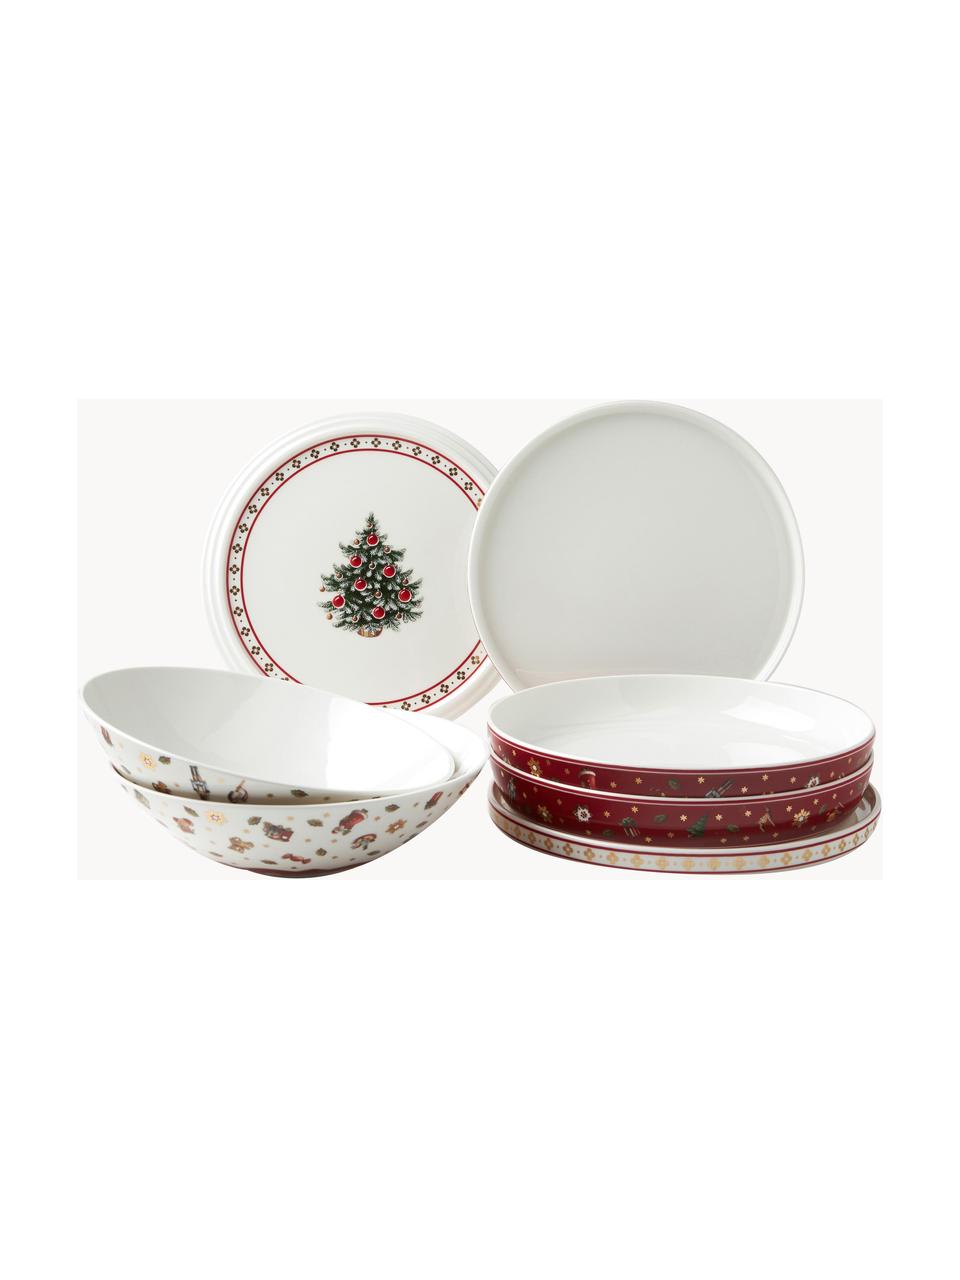 Súprava riadu s vianočným vzorom Delight, 7 dielov, Premium porcelán, Červená, biela, vzorovaná, Súprava s rôznymi veľkosťami